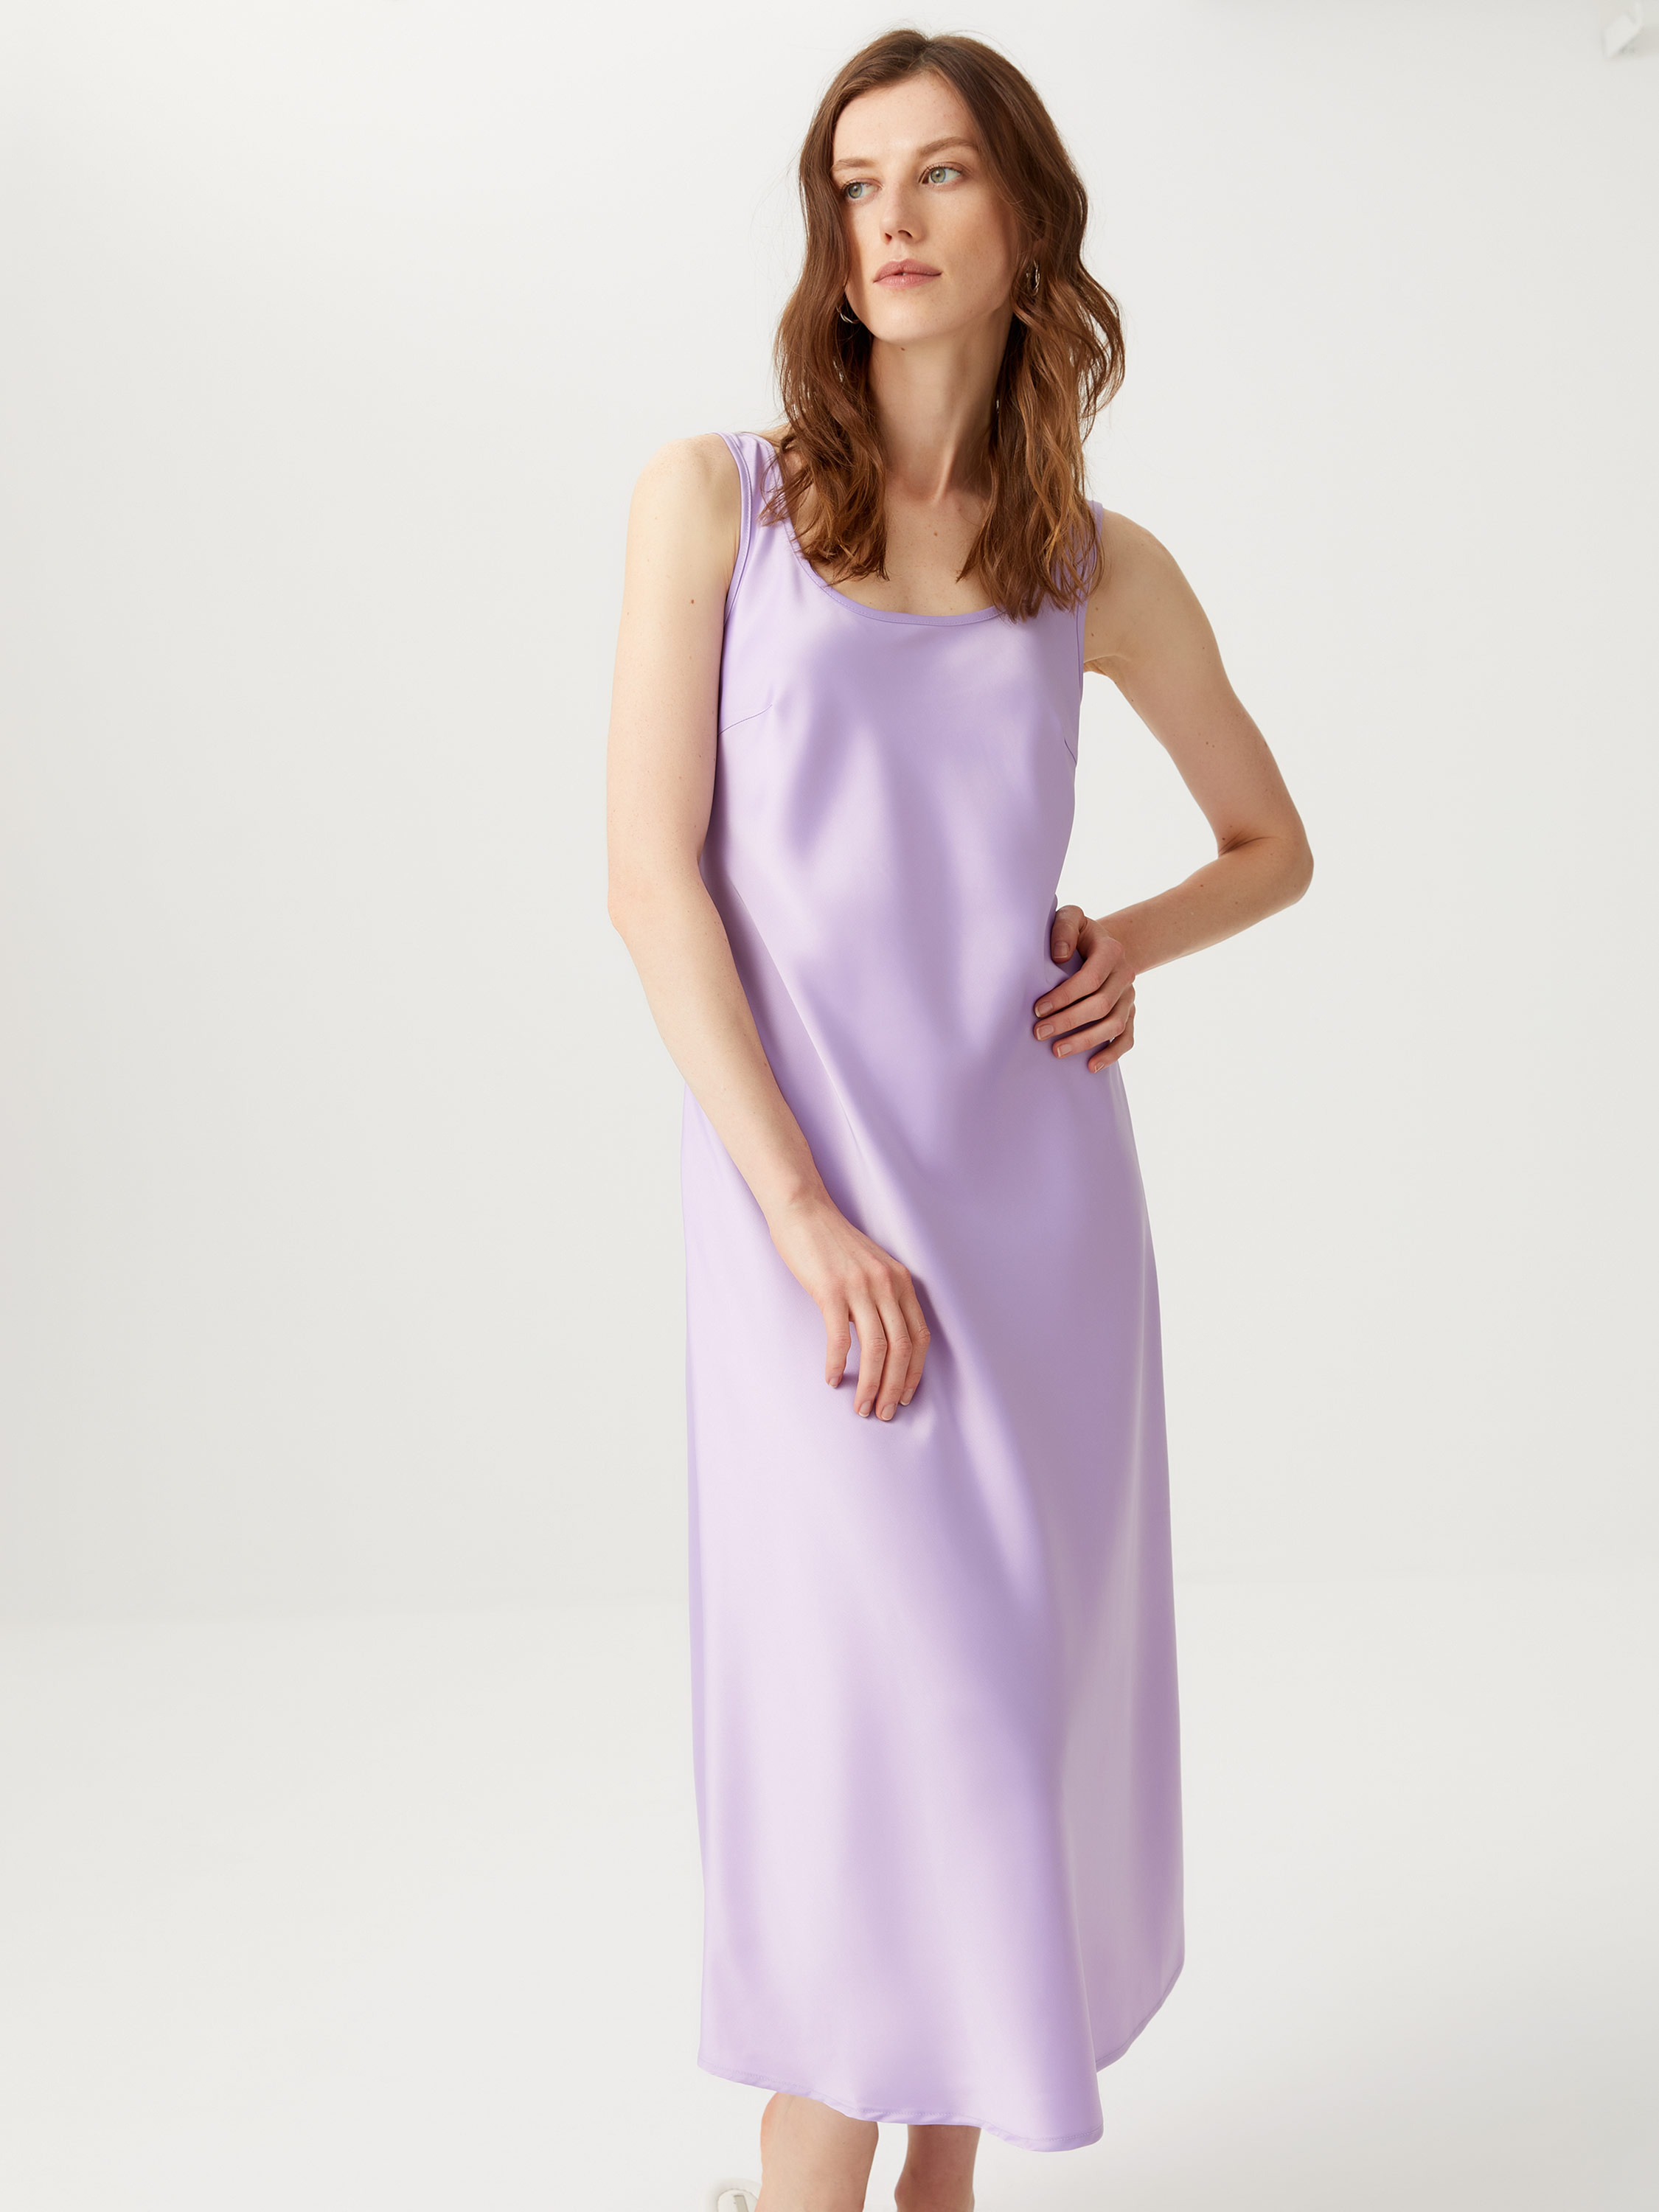 Купить Атласное Платье В Интернет Магазине